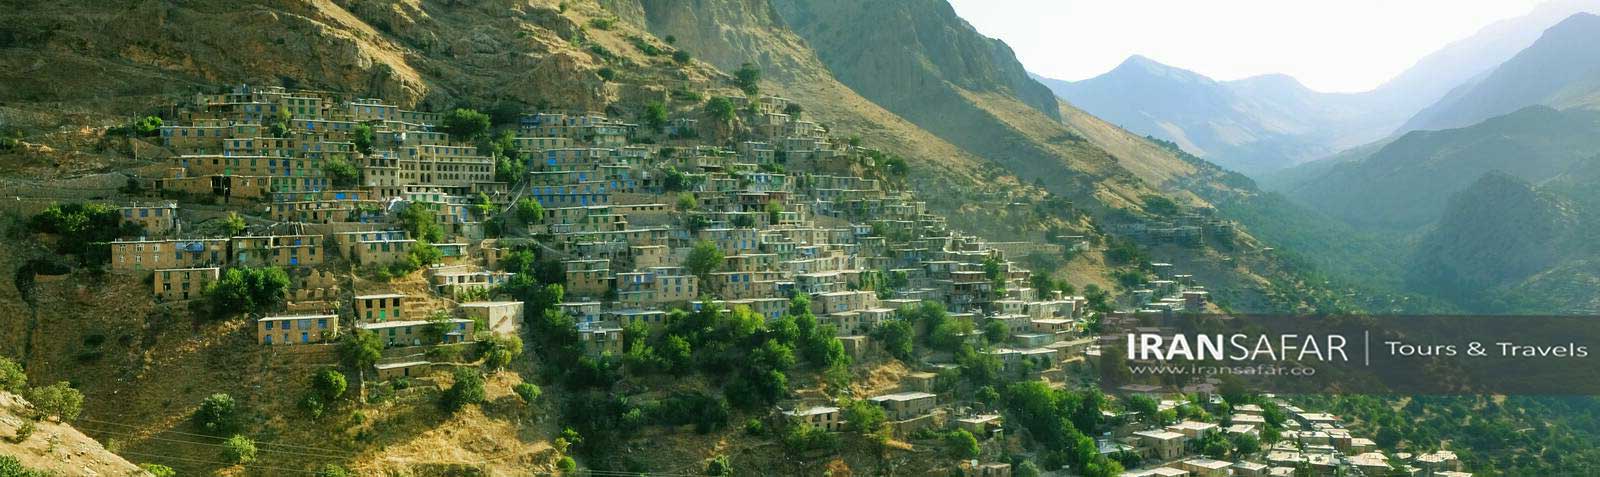 Uraman Village Iran Kurdistan 